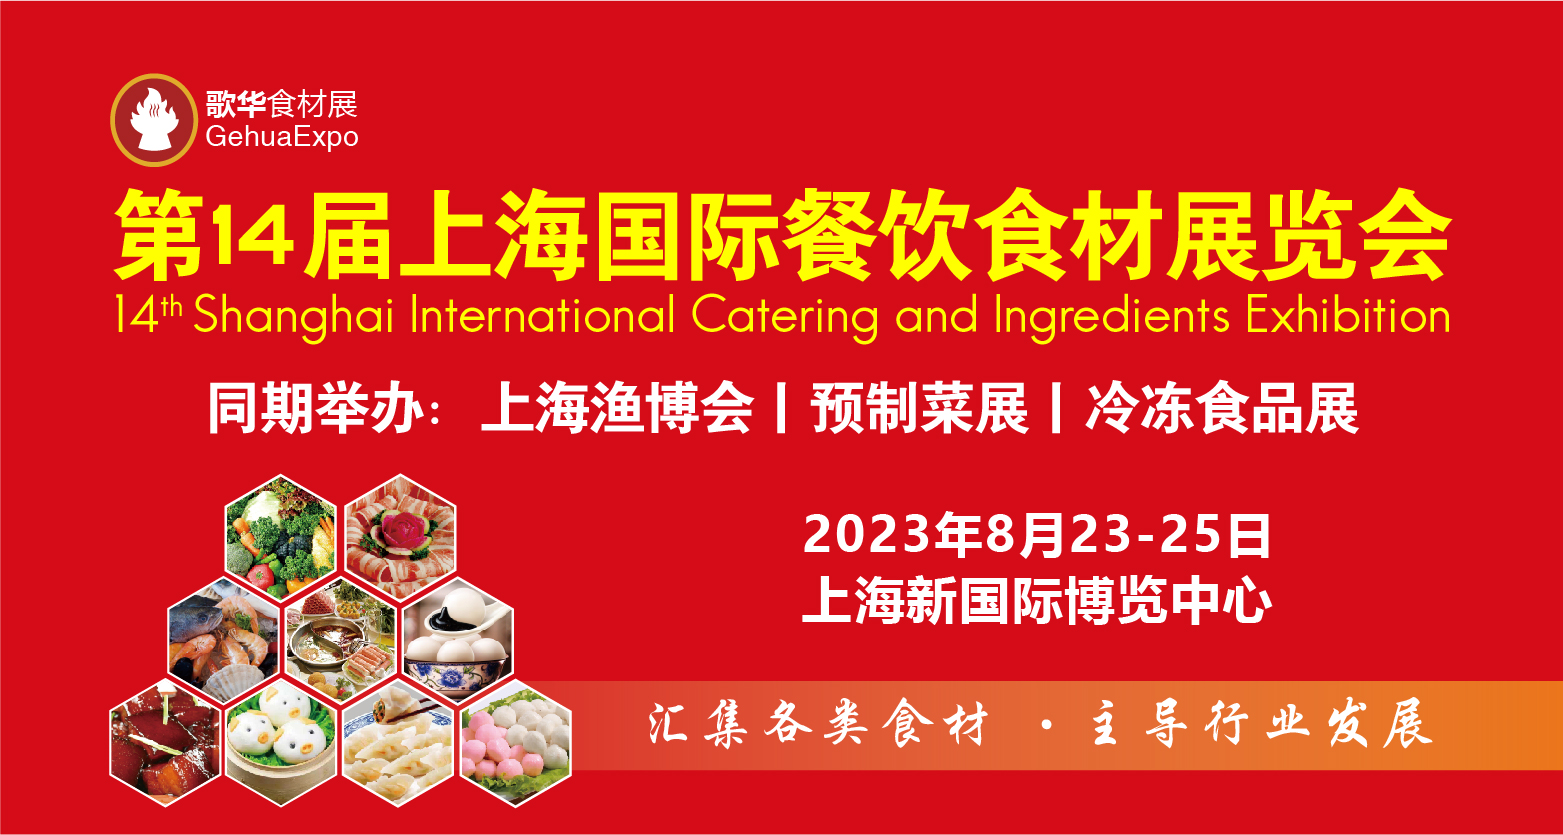 【特装欣赏合集二】 第14届歌华食材展将于8月23-25日亮相上海新国际博览中心(图1)